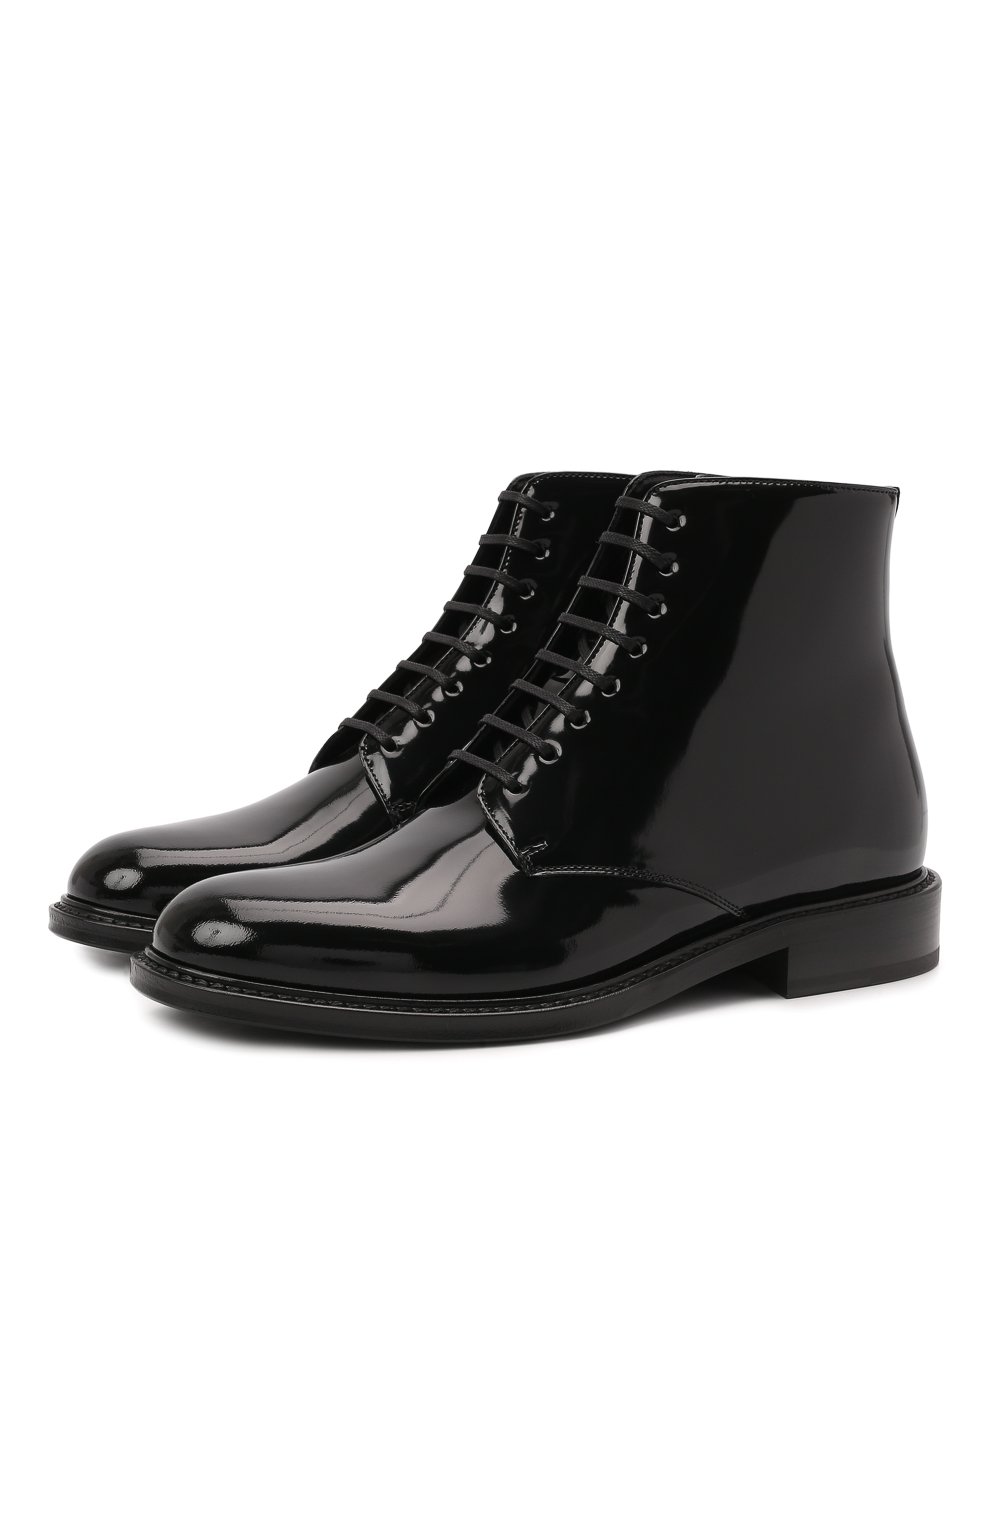 Ботинки и ботильоны Saint Laurent, Кожаные ботинки Army Saint Laurent, Италия, Чёрный, Кожа: 100%; Подошва-кожа: 100%; Подкладка-кожа: 100%; Стелька-кожа: 100%;, 12286327  - купить